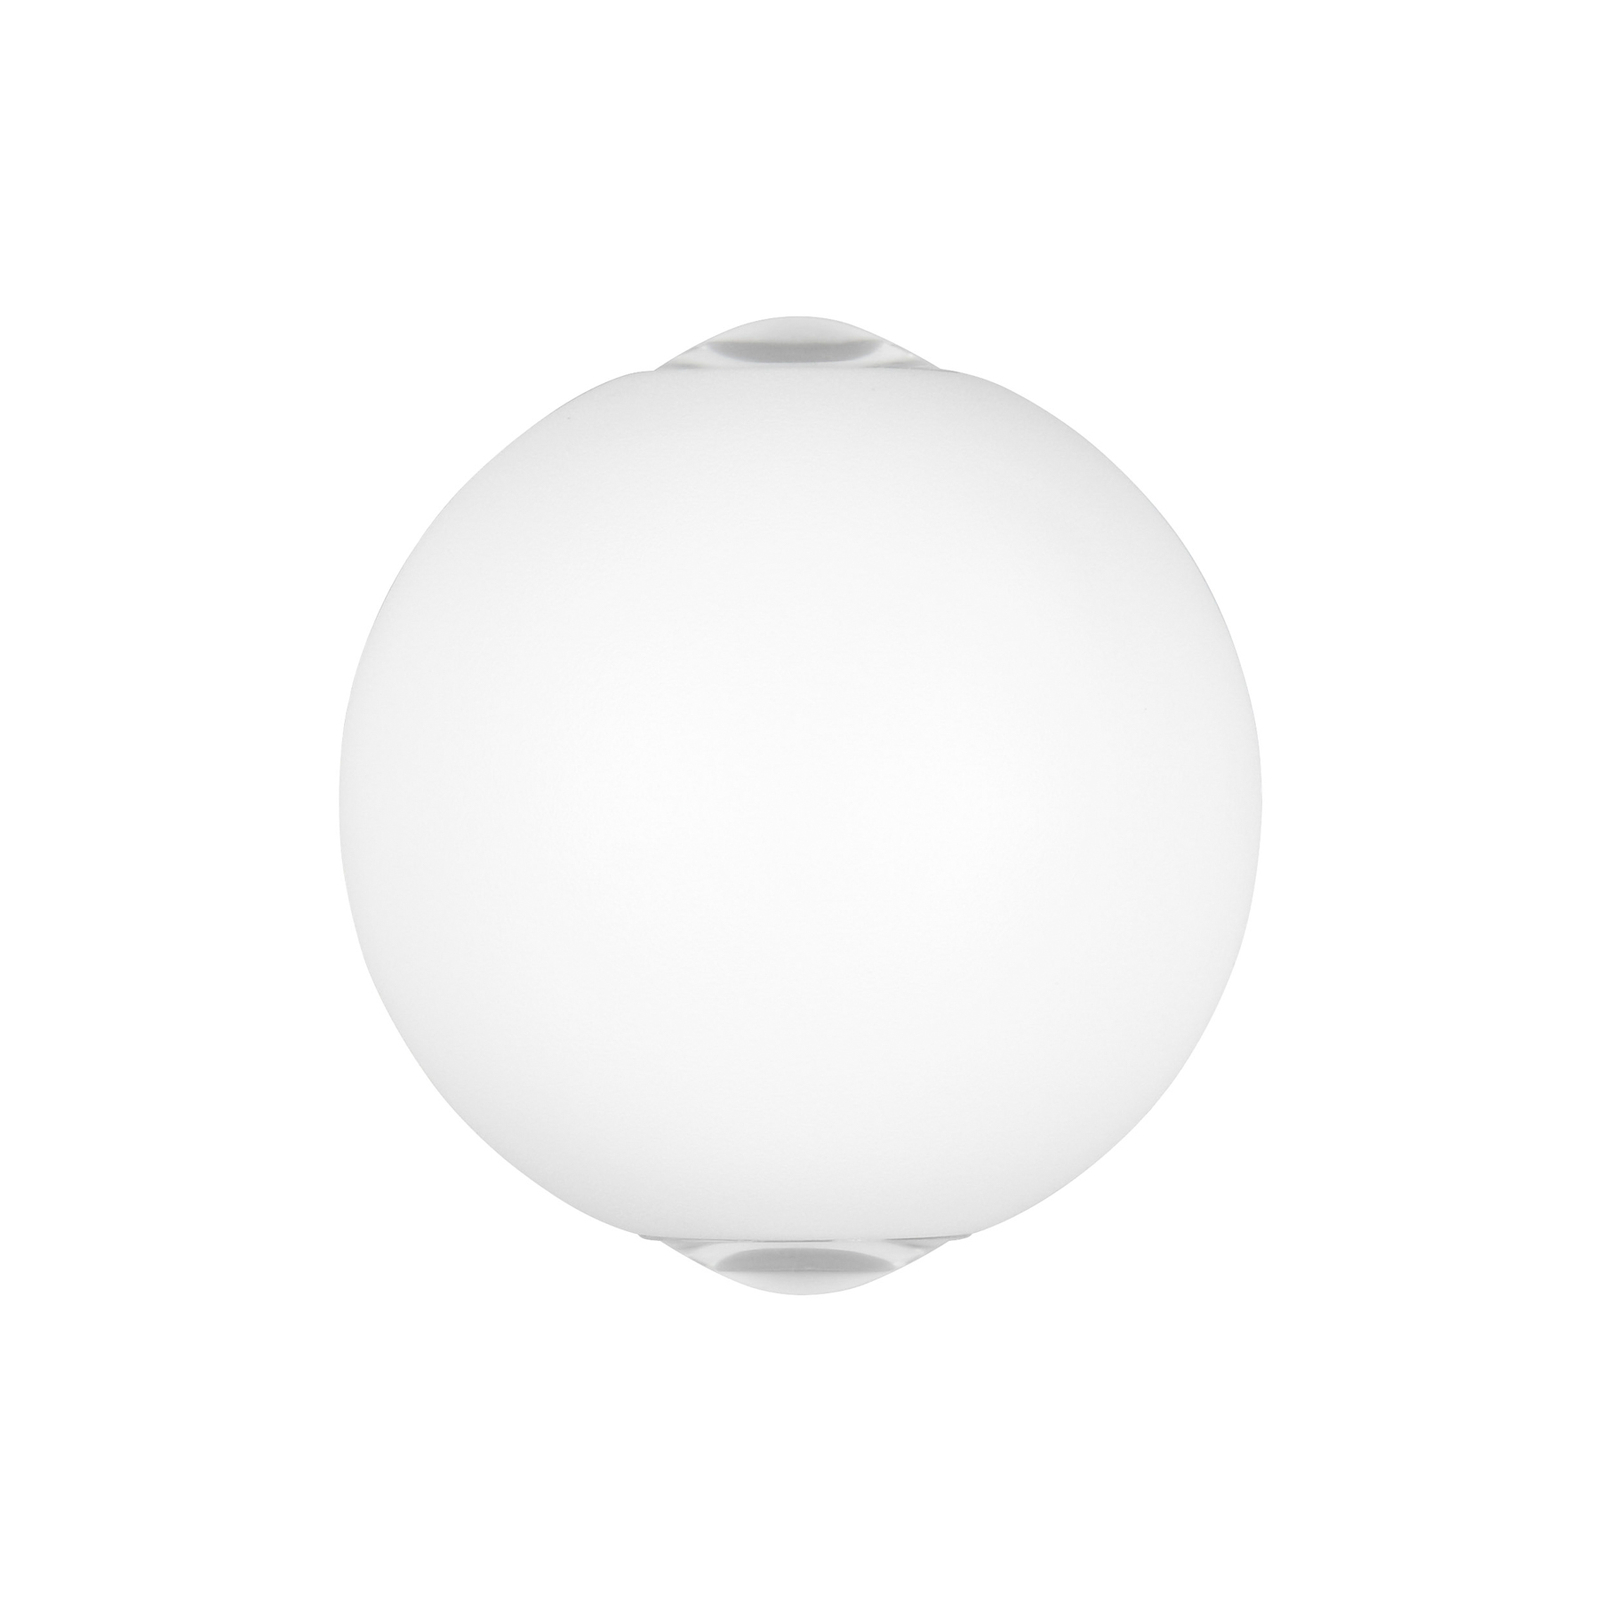 Applique d'extérieur LED Avisio, blanc mat, à 2 lampes, semi-circulaire